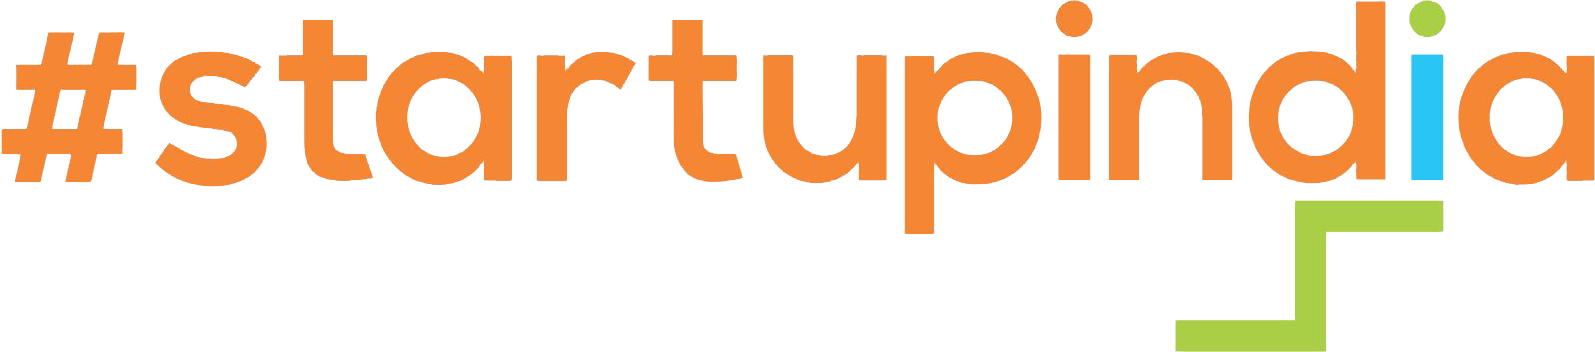 Sparcklean Startup India Registered 